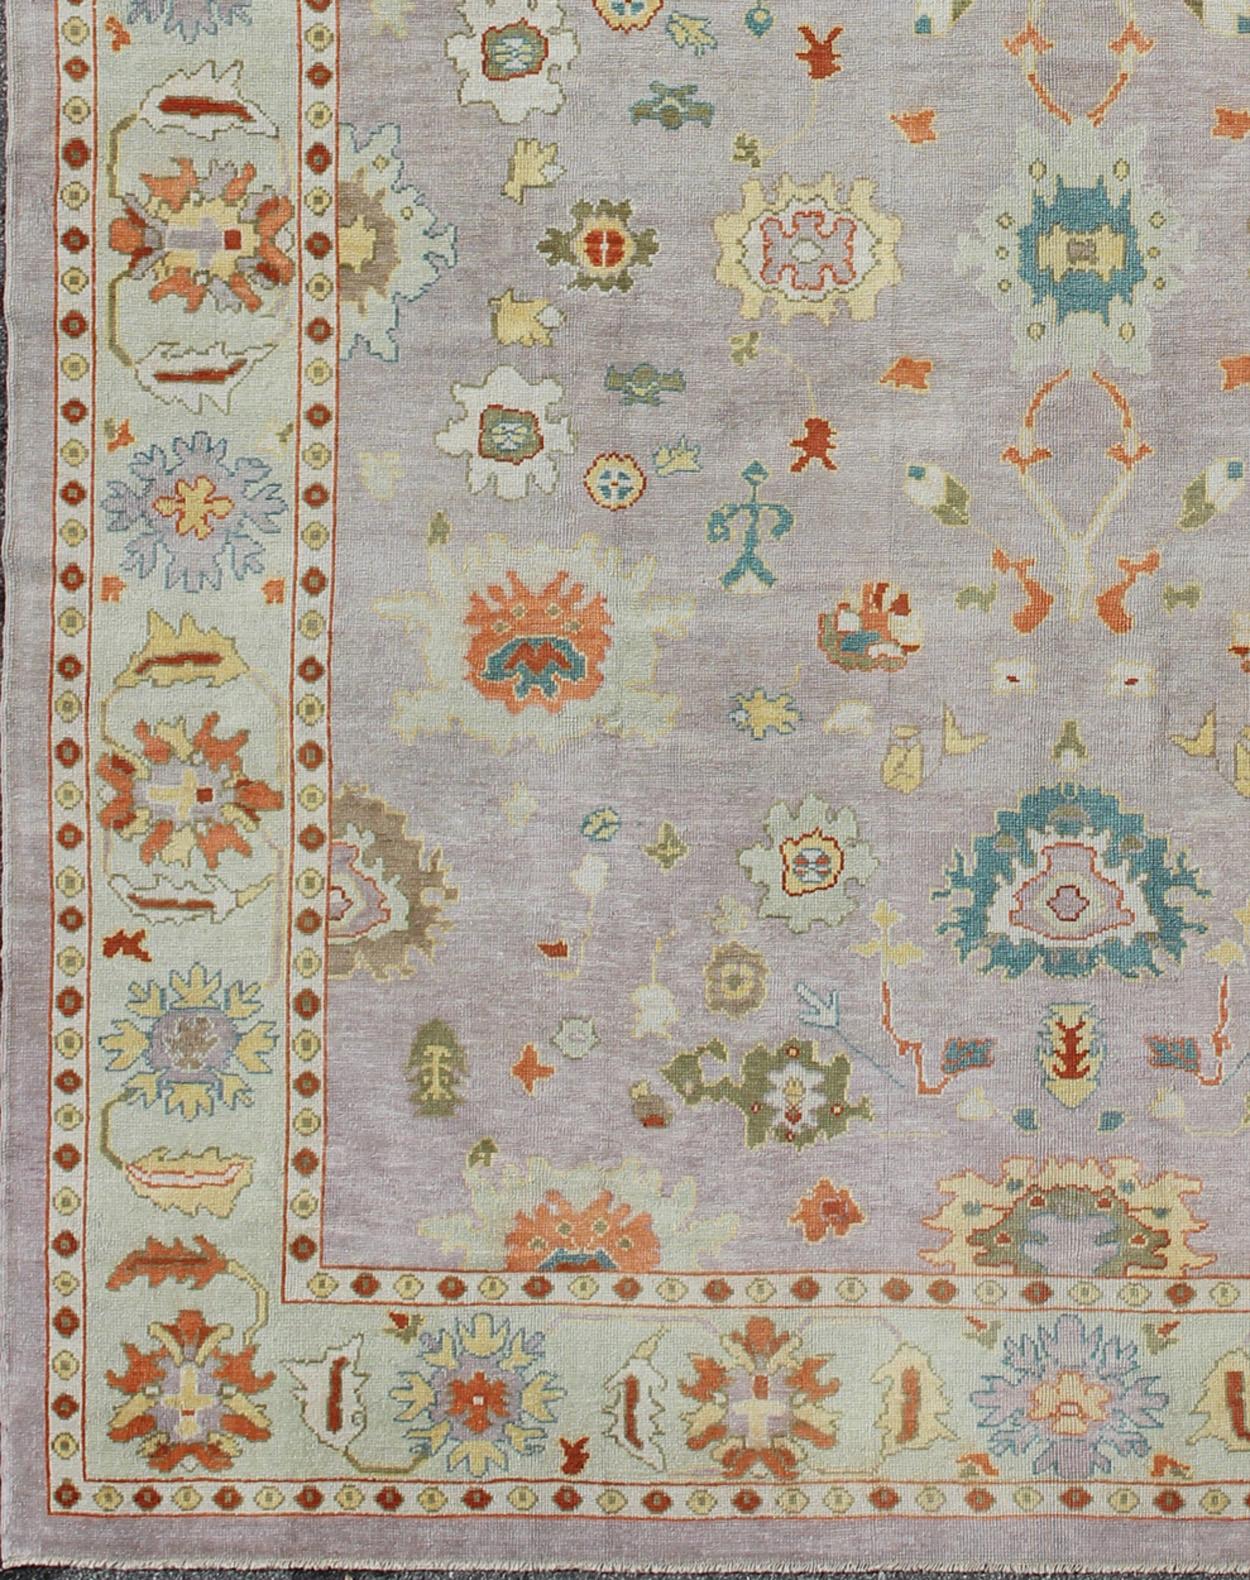 Grand tapis turc Oushak avec une palette colorée et un design all-over, tapis Keivan Woven Arts EN-165062, pays d'origine / type : Turquie / Oushak

Mesures : 12' x 15'.

Ce tapis traditionnel Oushak de Turquie présente une palette colorée et un